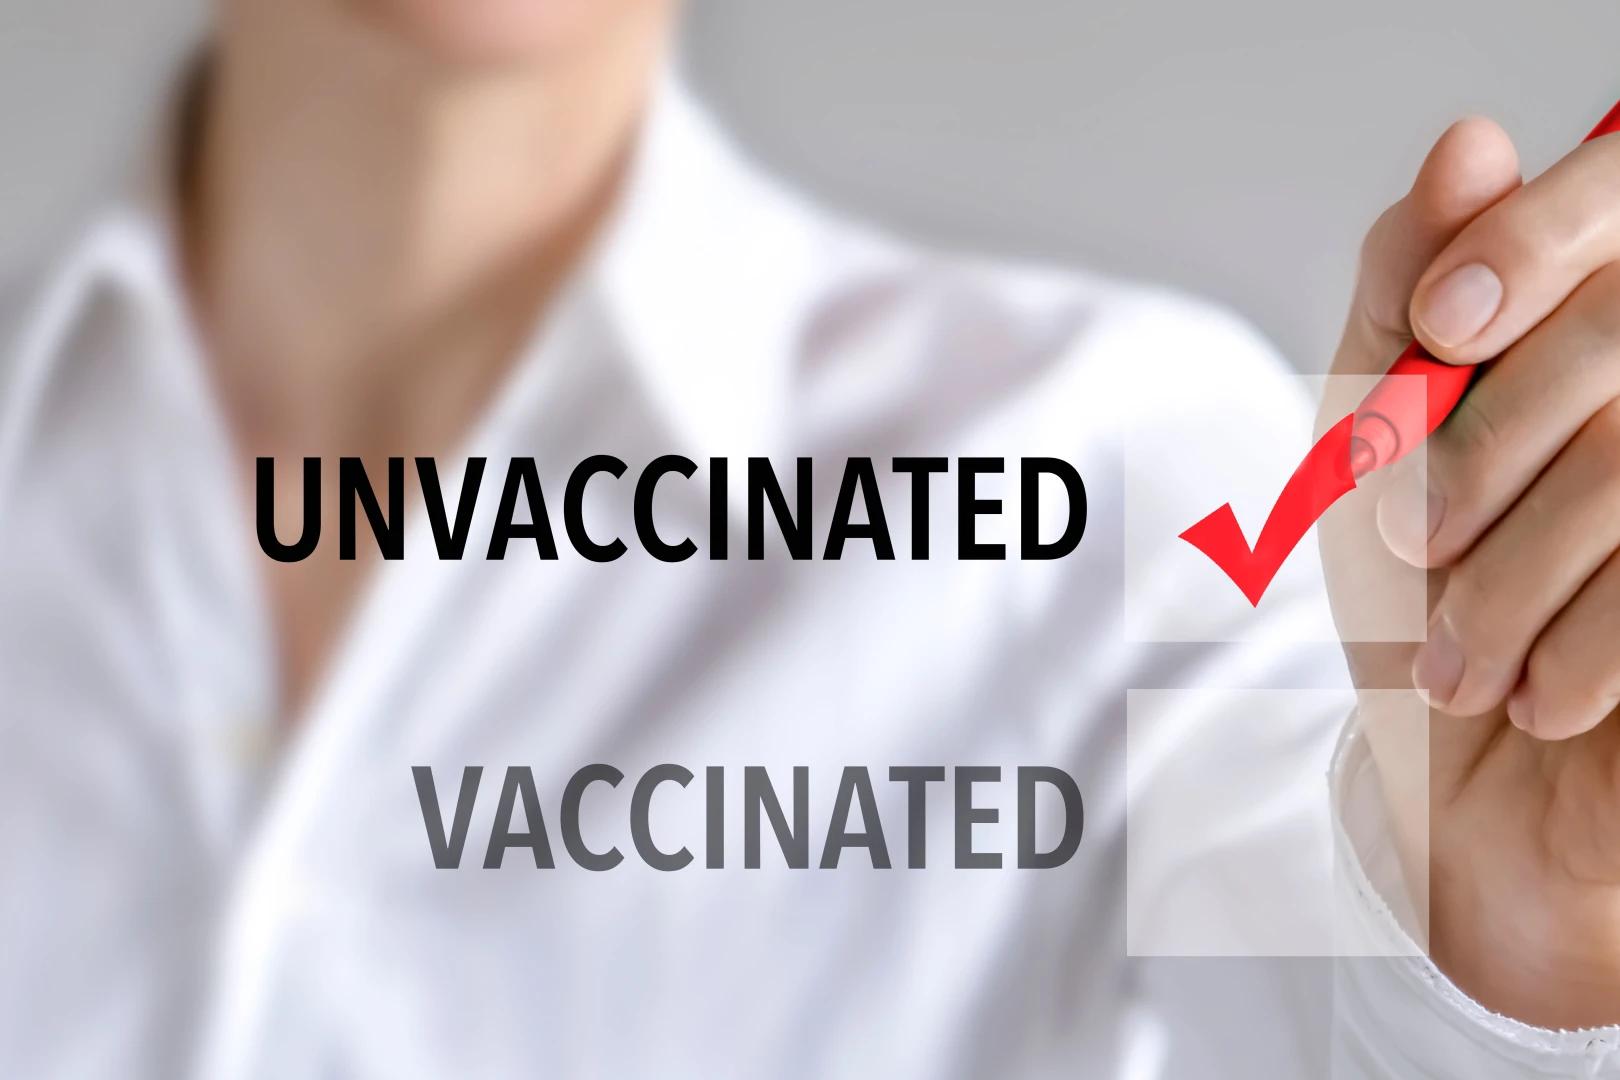 Novos códigos de cobrança hospitalar registram status de conformidade com vacinação contra COVID-19 para uso governamental